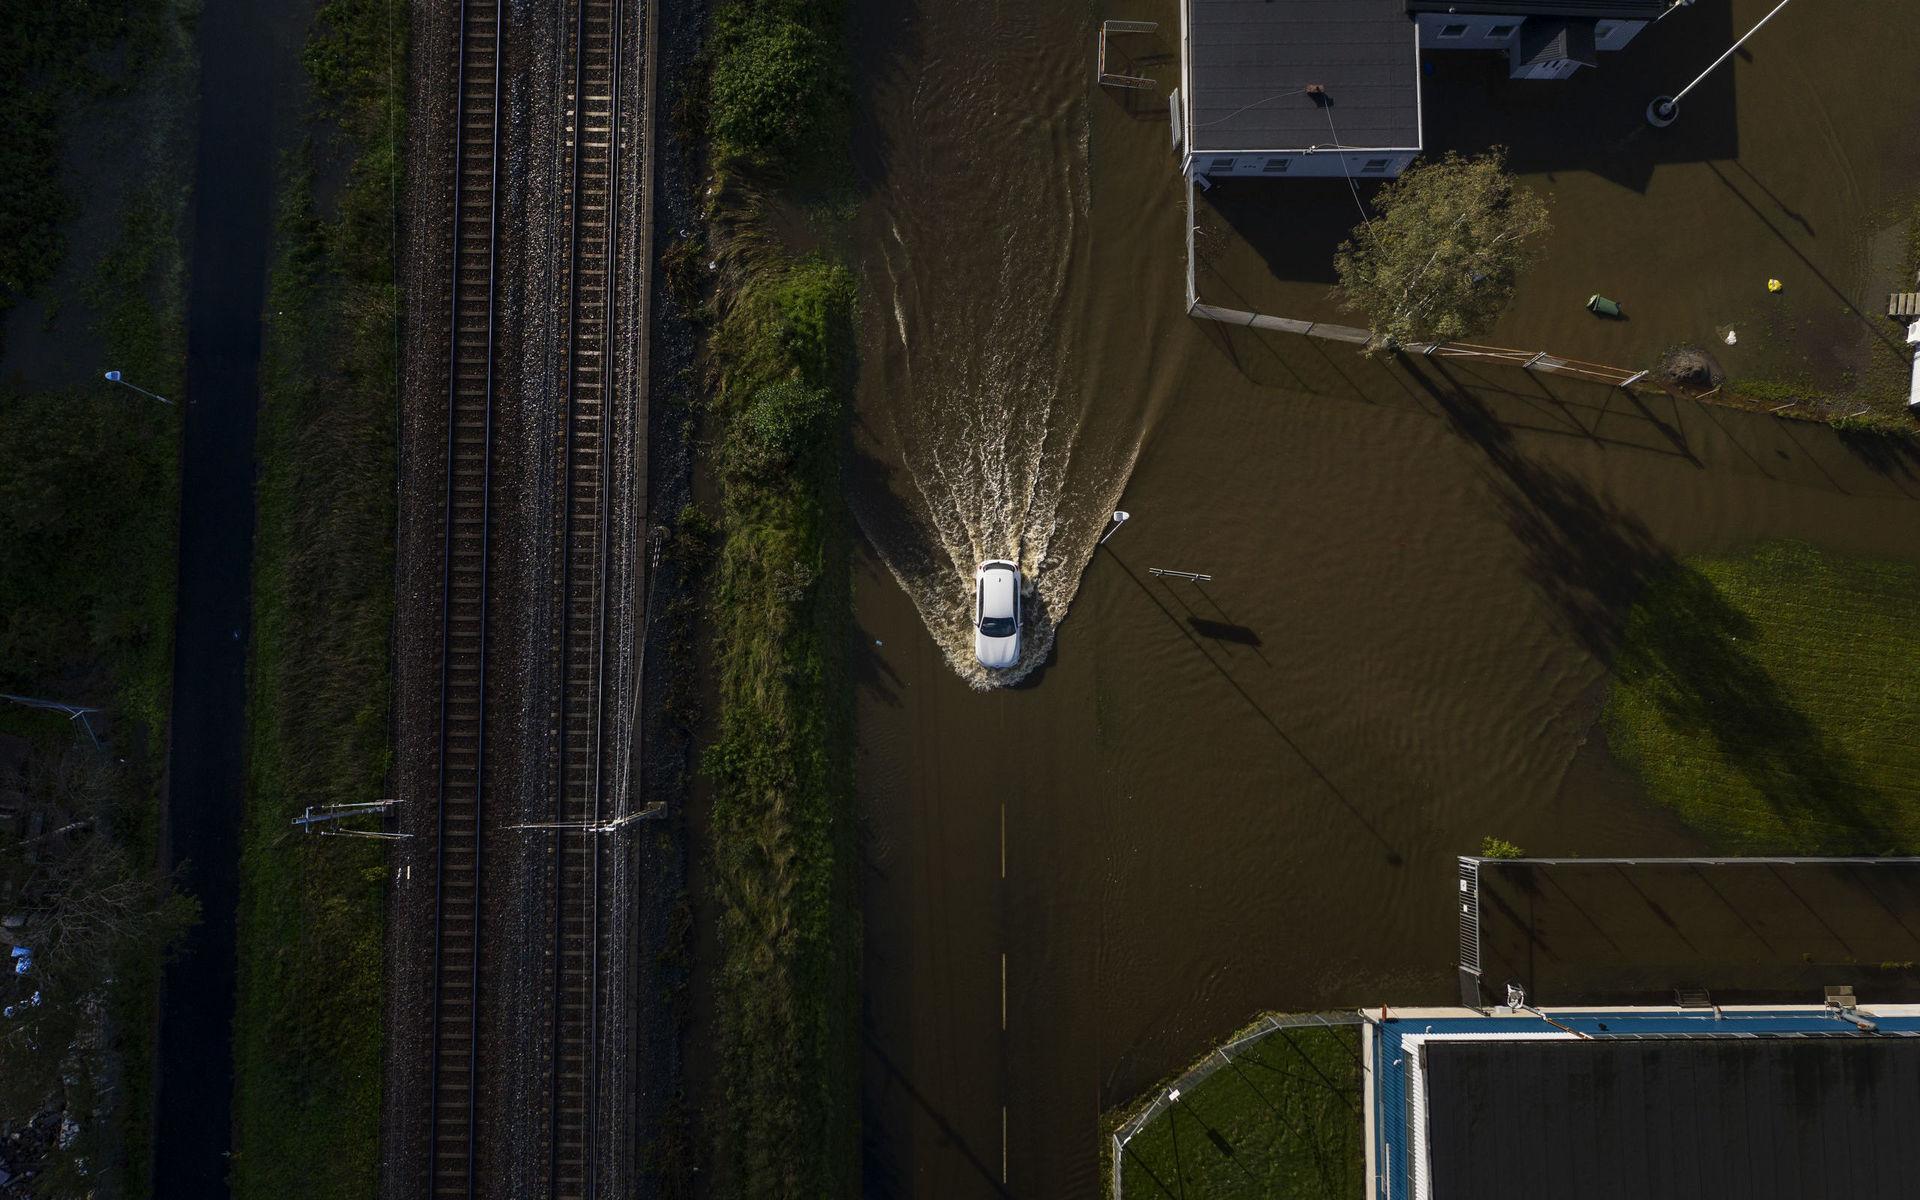 Det är stora översvämningar i Kållered. Bilar kör i vattnet längs järnvägsspåren.